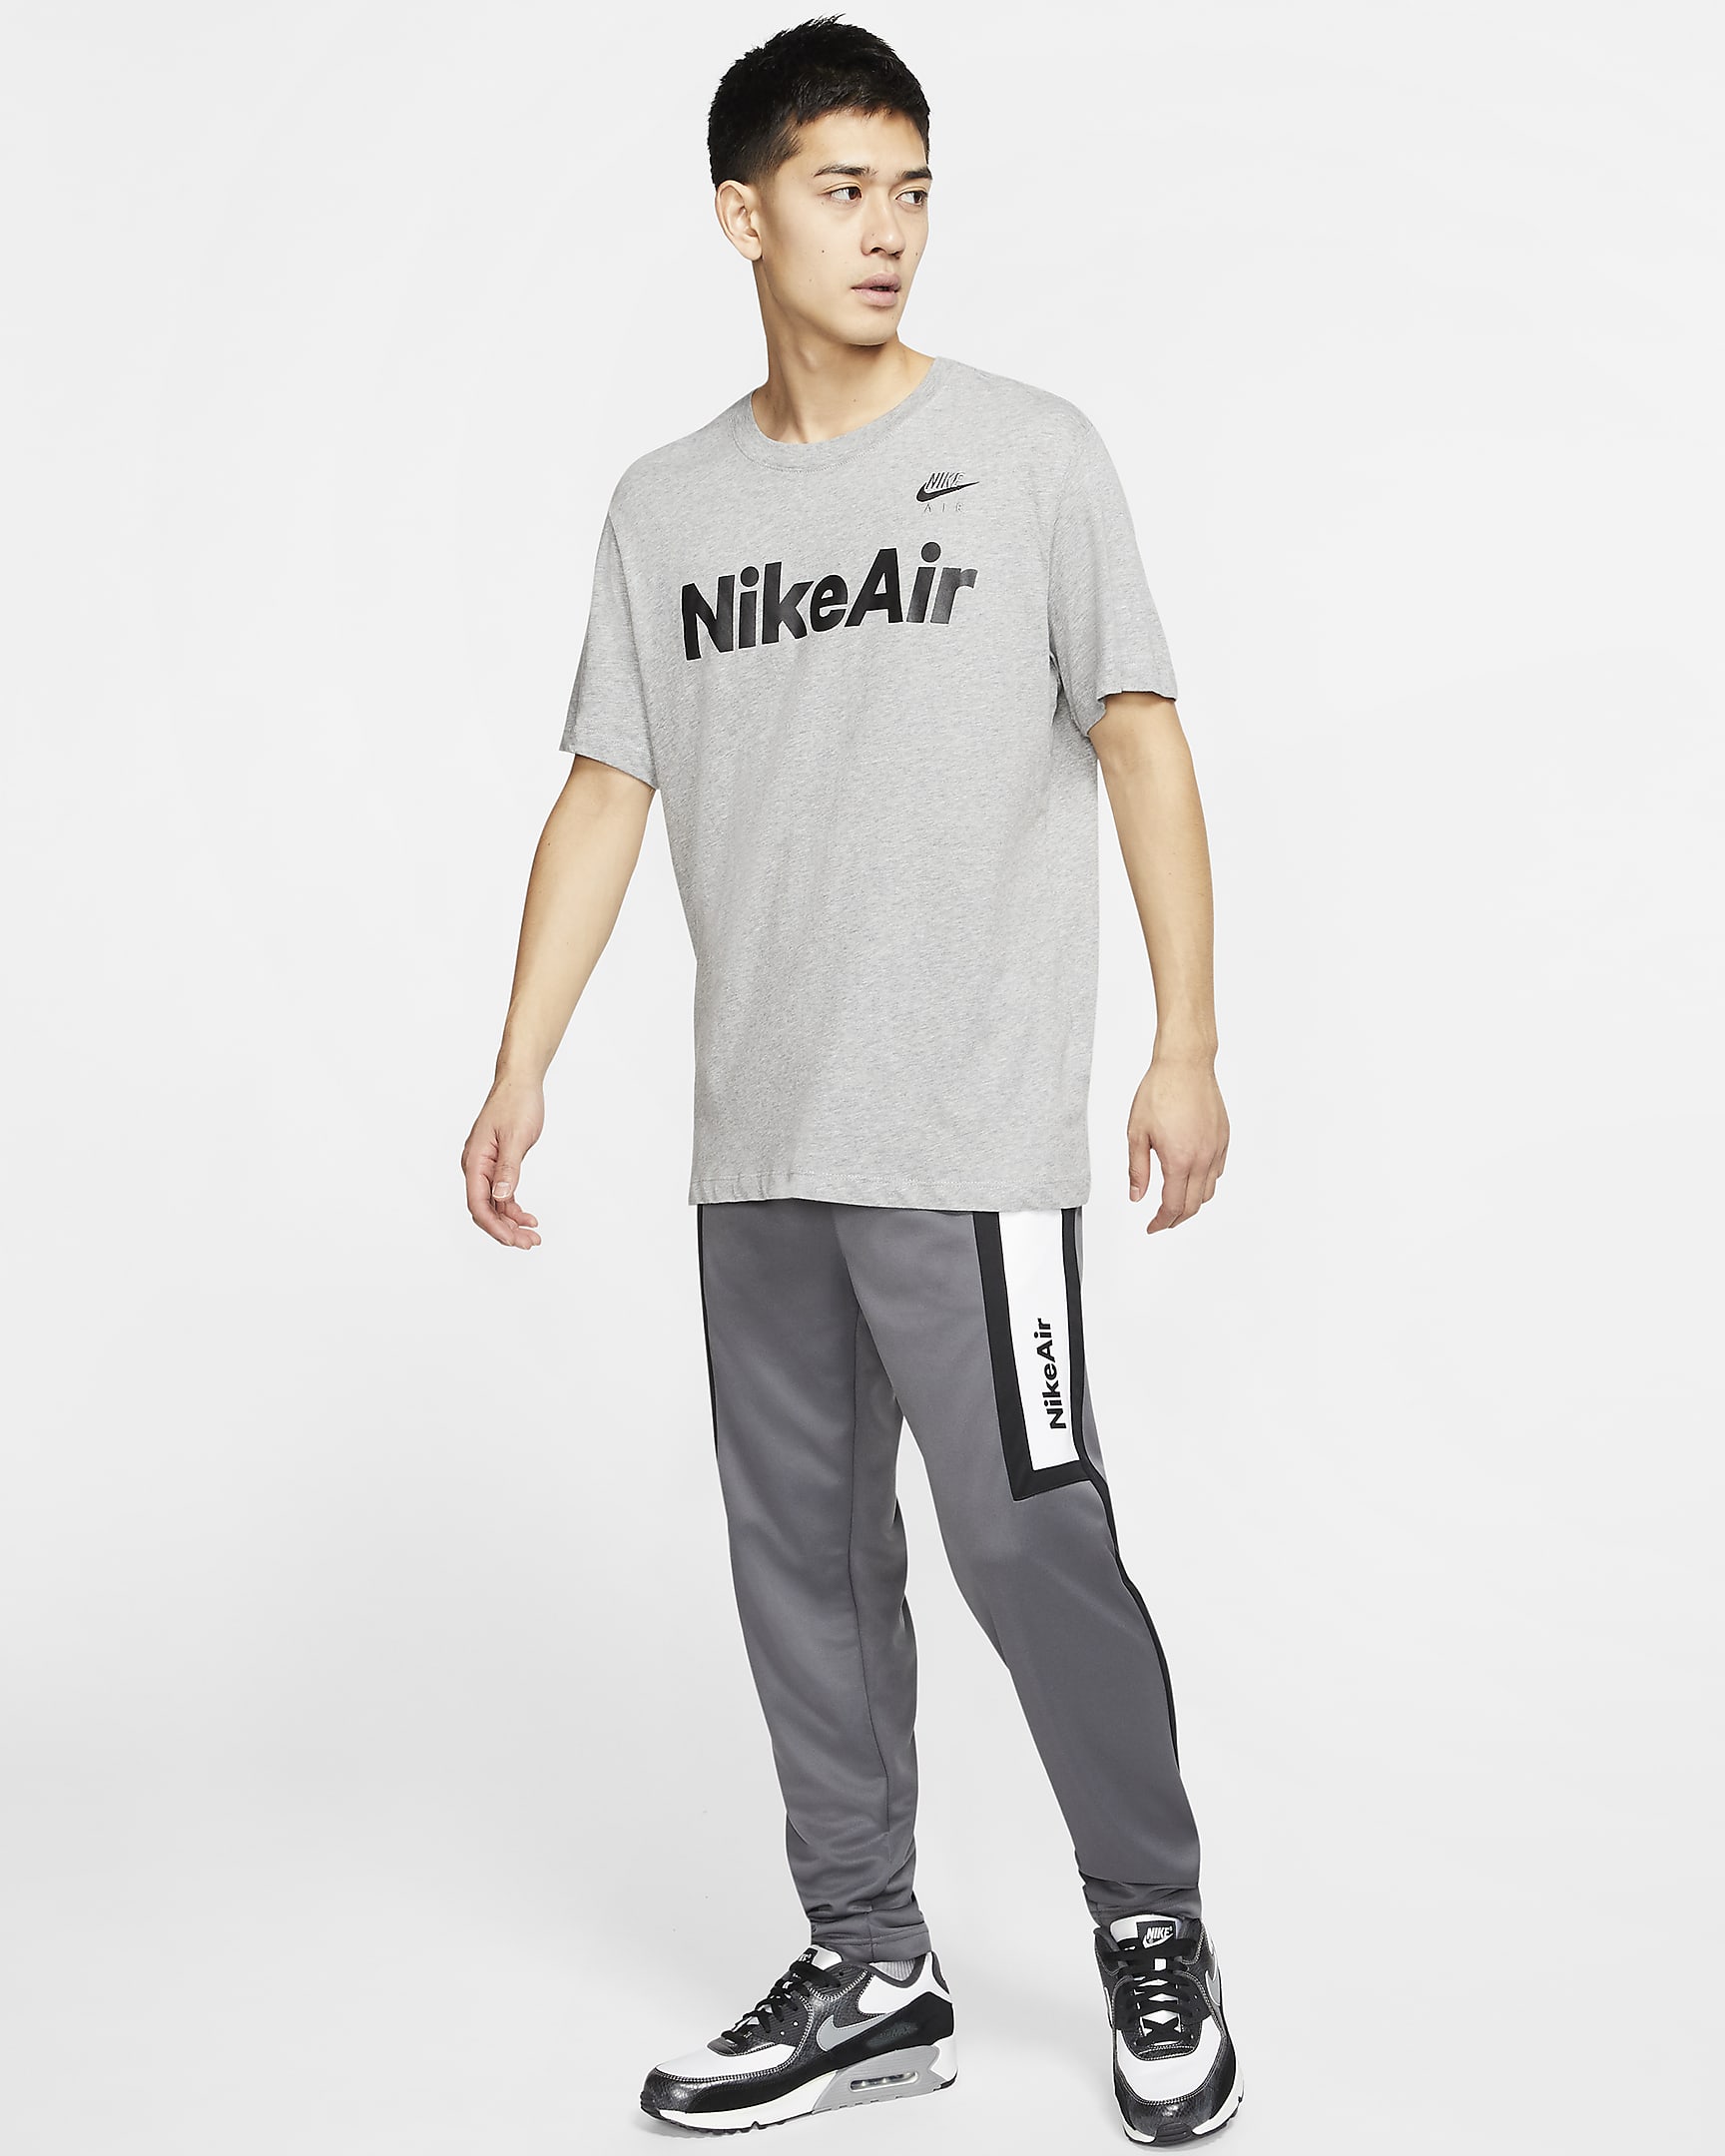 Nike Air Men's T-Shirt. Nike AU